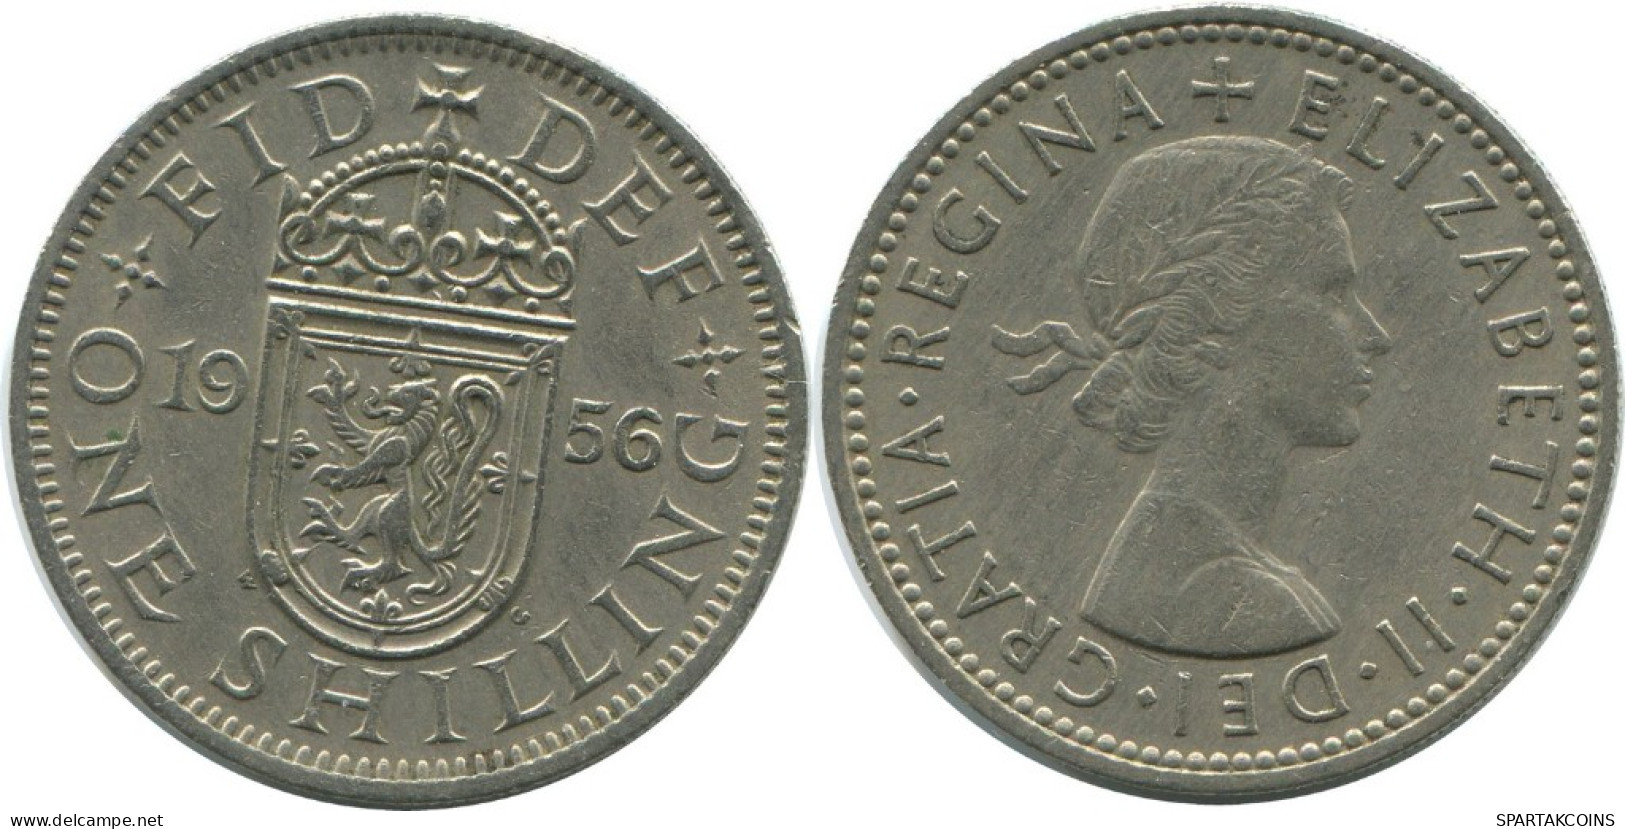 SHILLING 1956 UK GROßBRITANNIEN GREAT BRITAIN Münze #AG996.1.D.A - I. 1 Shilling